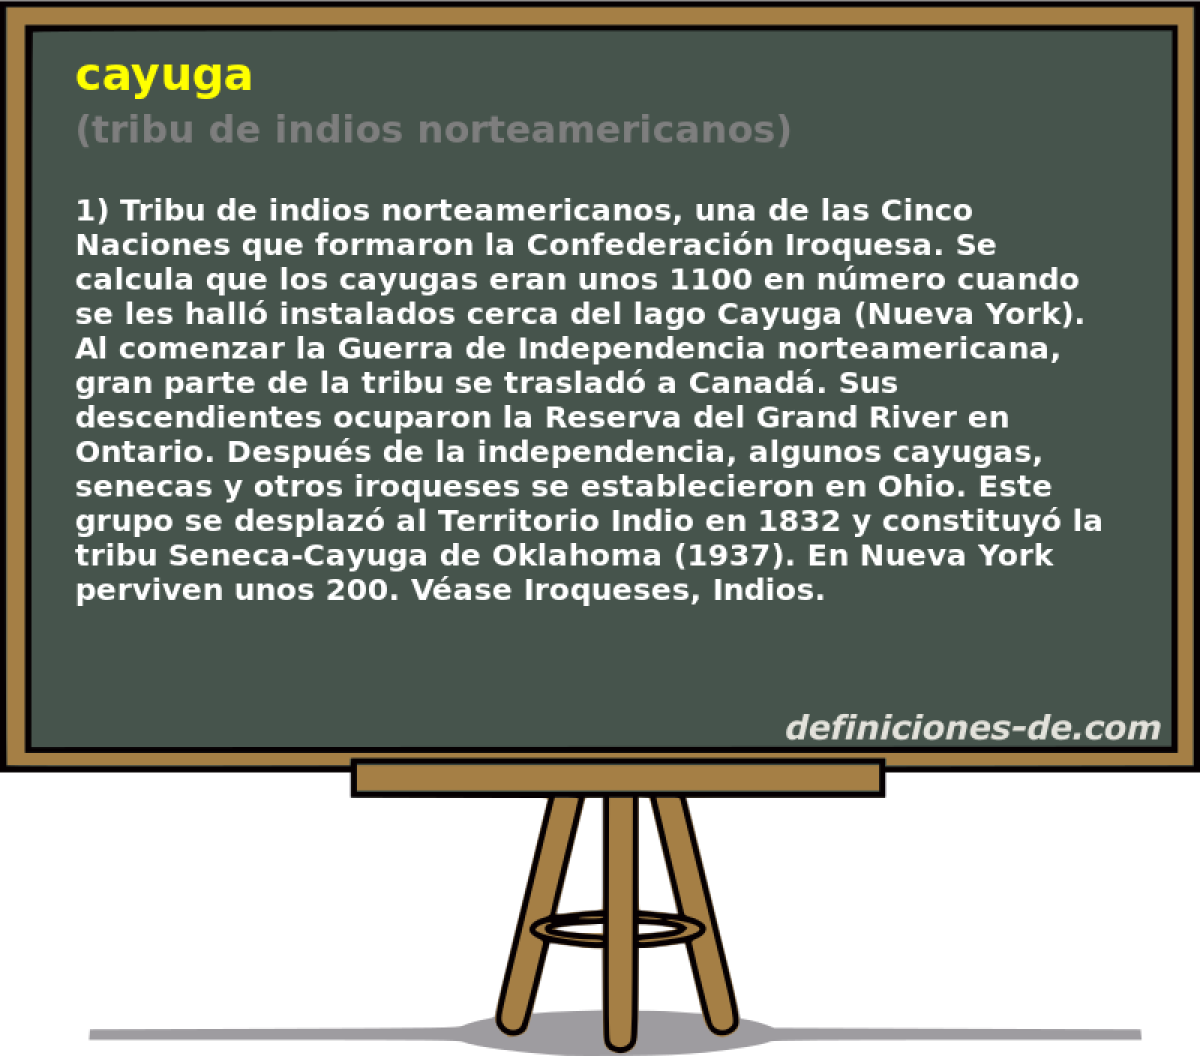 cayuga (tribu de indios norteamericanos)